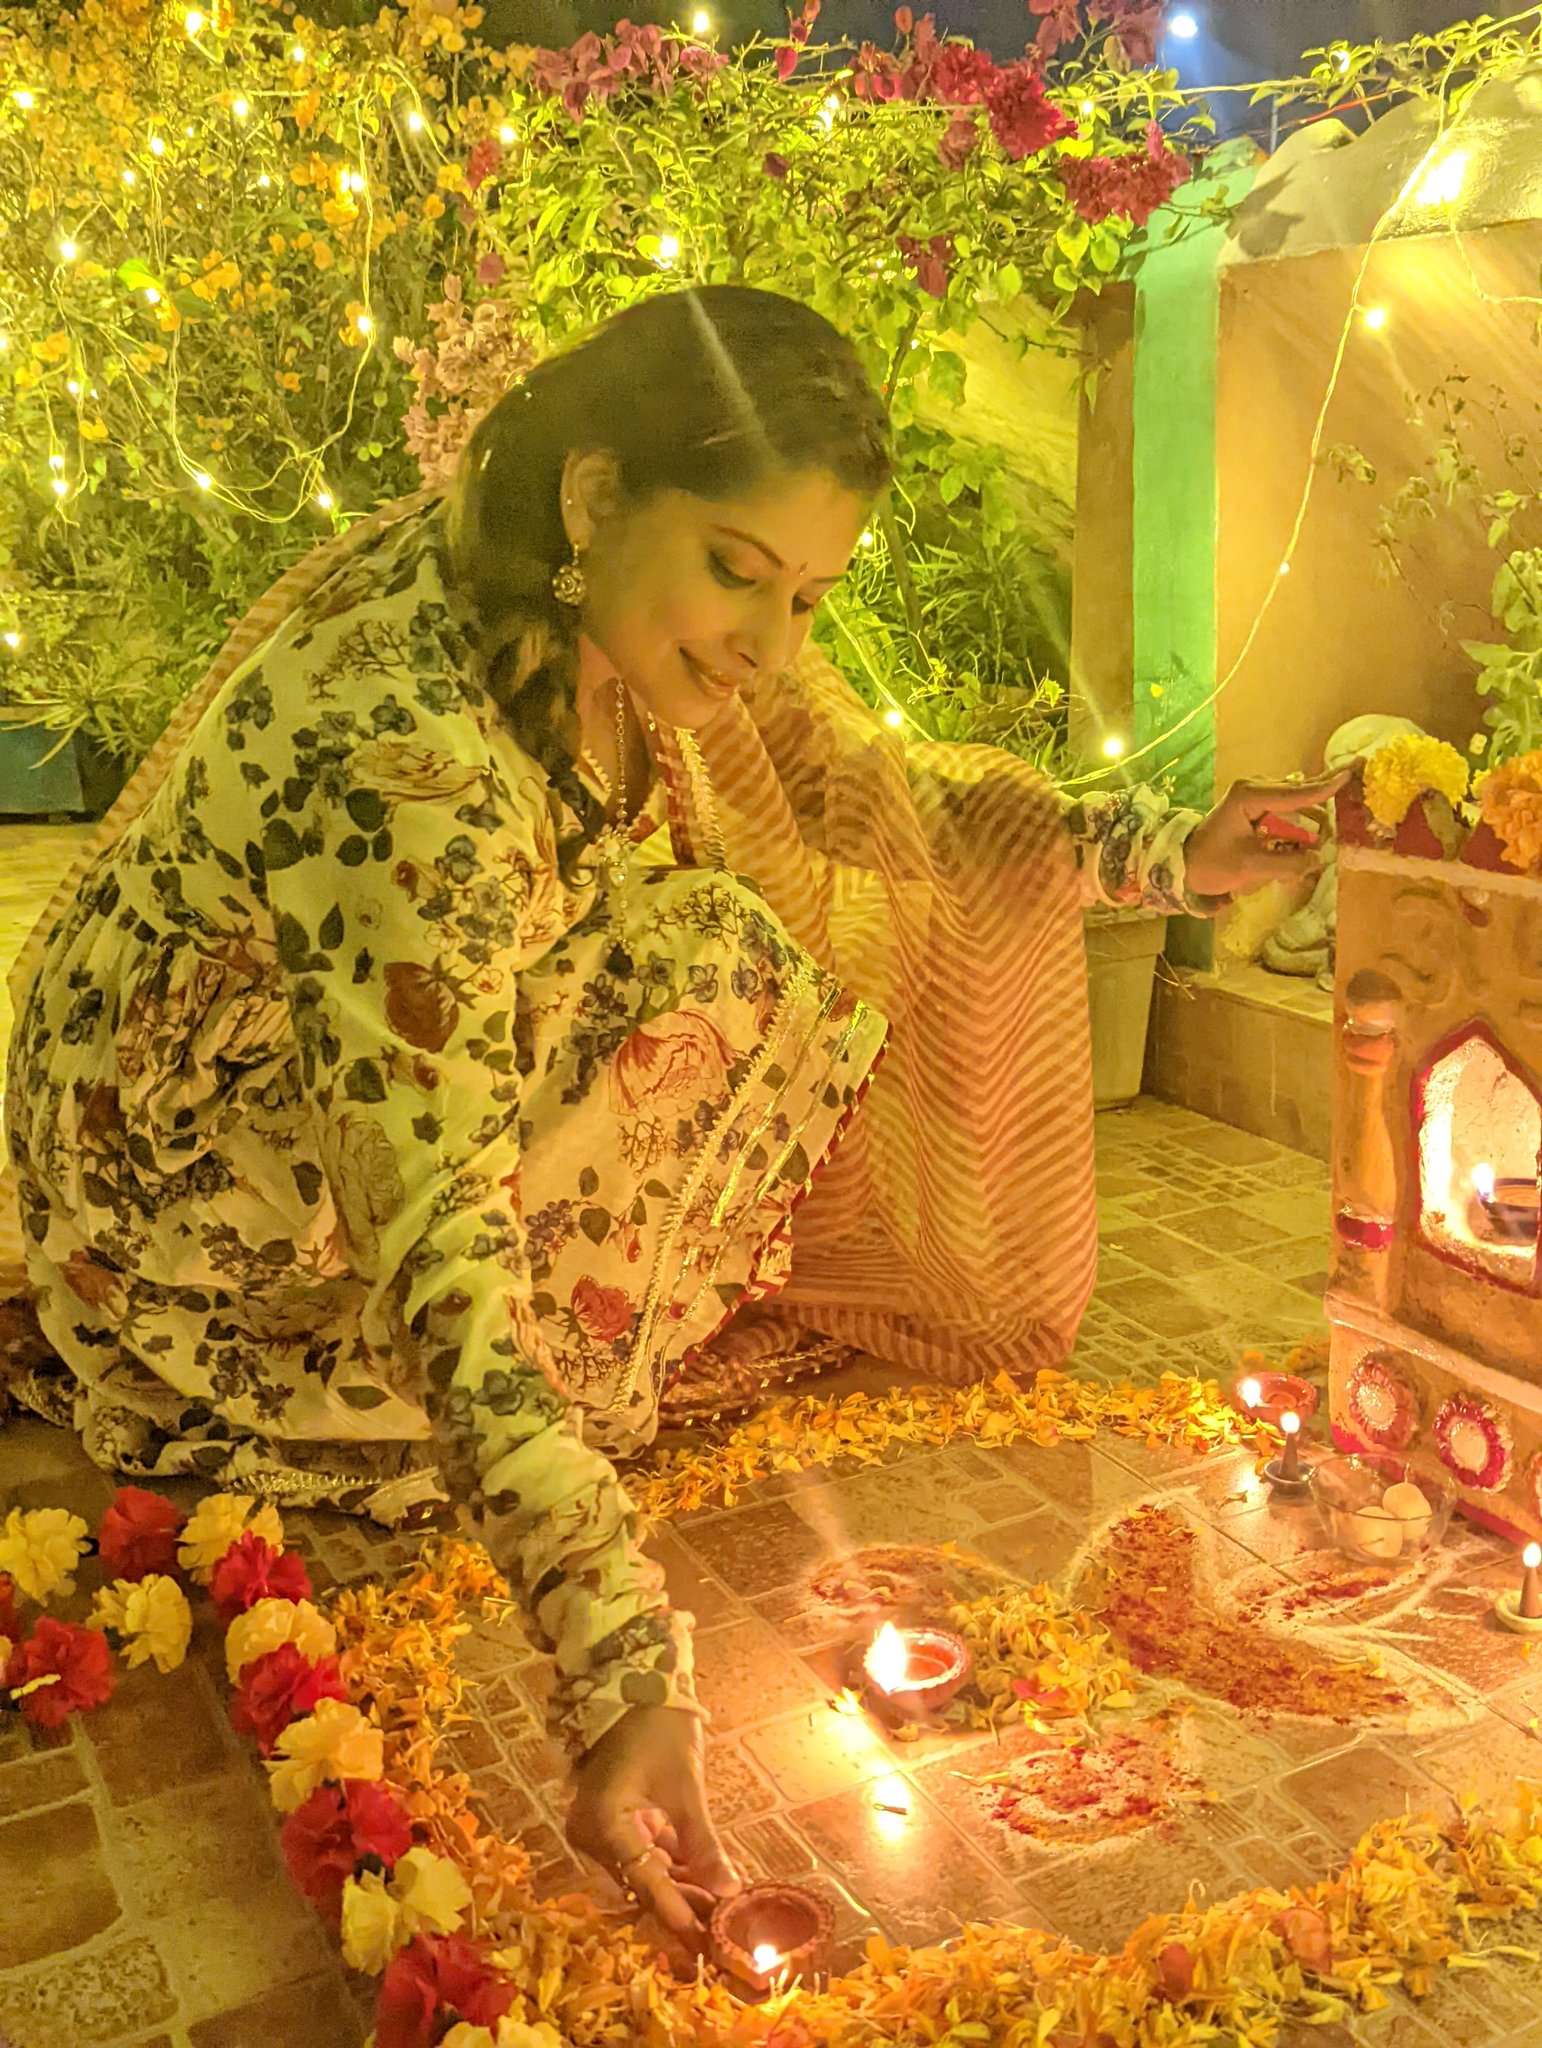 Diwali Light Pictures | Download Free Images on Unsplash